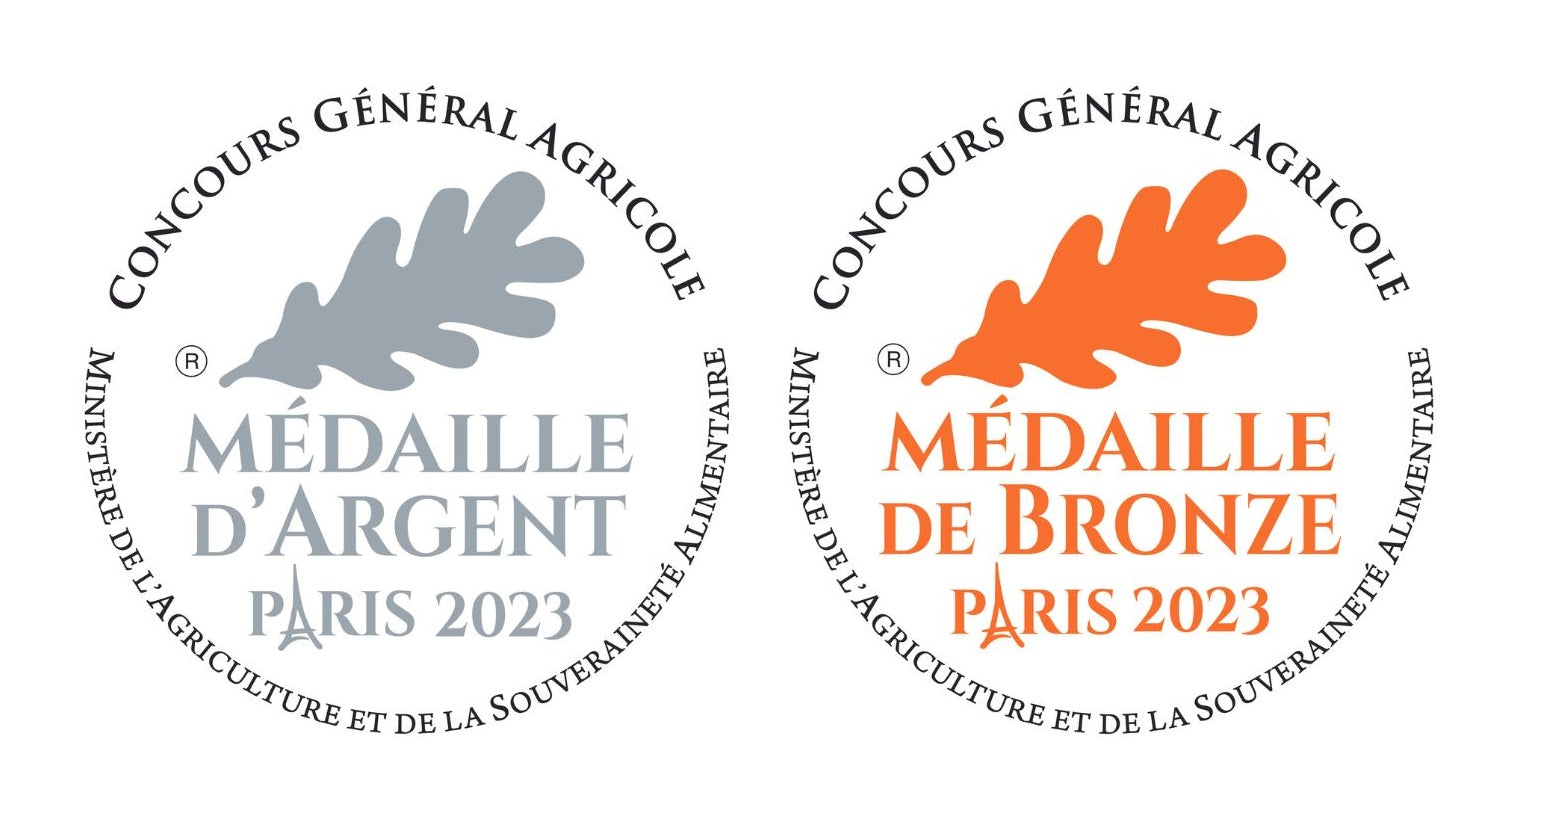 Medailles concours general agricole magret seche rillette pur canard - La Comtesse de Barole